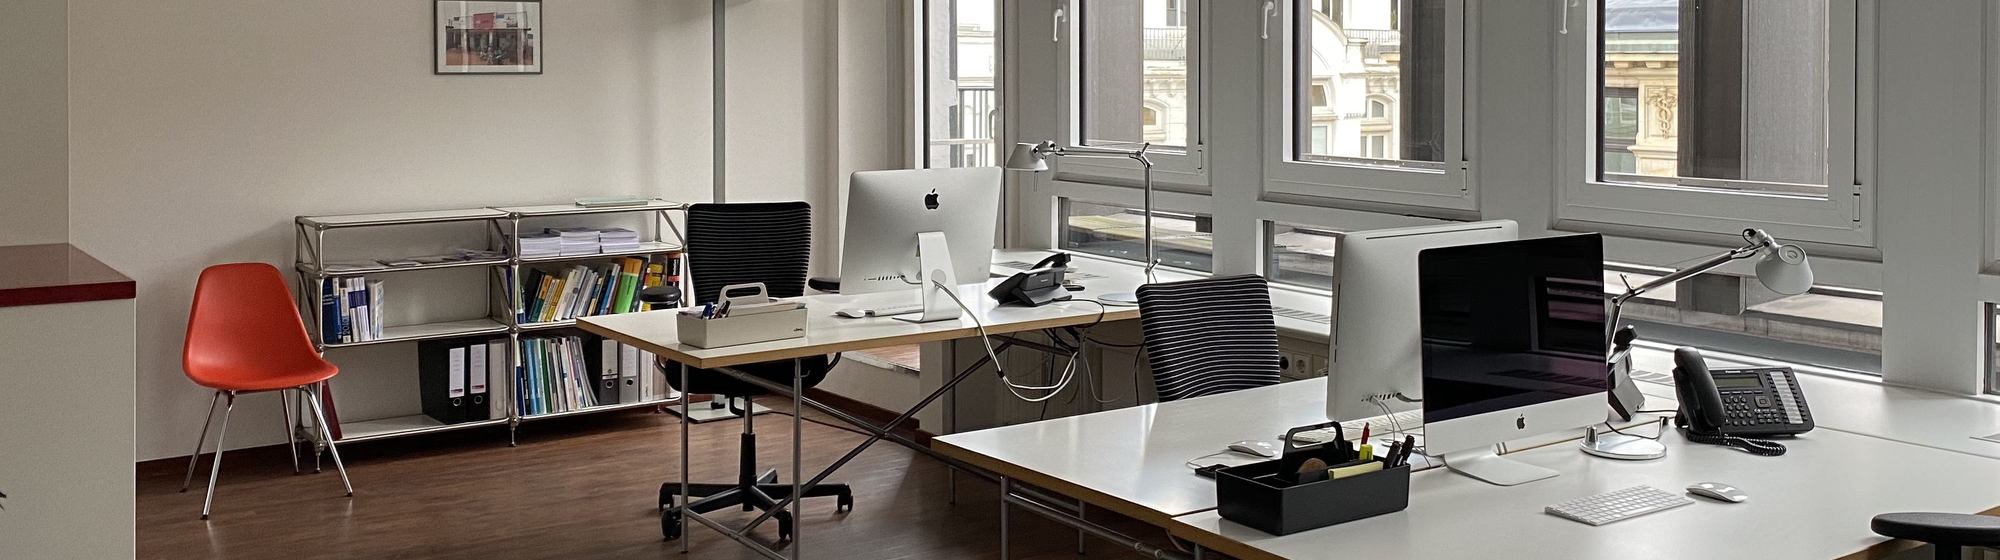 Blick in das Büro von we care communications: zwei Schreibtische, Stühle und ein Regal